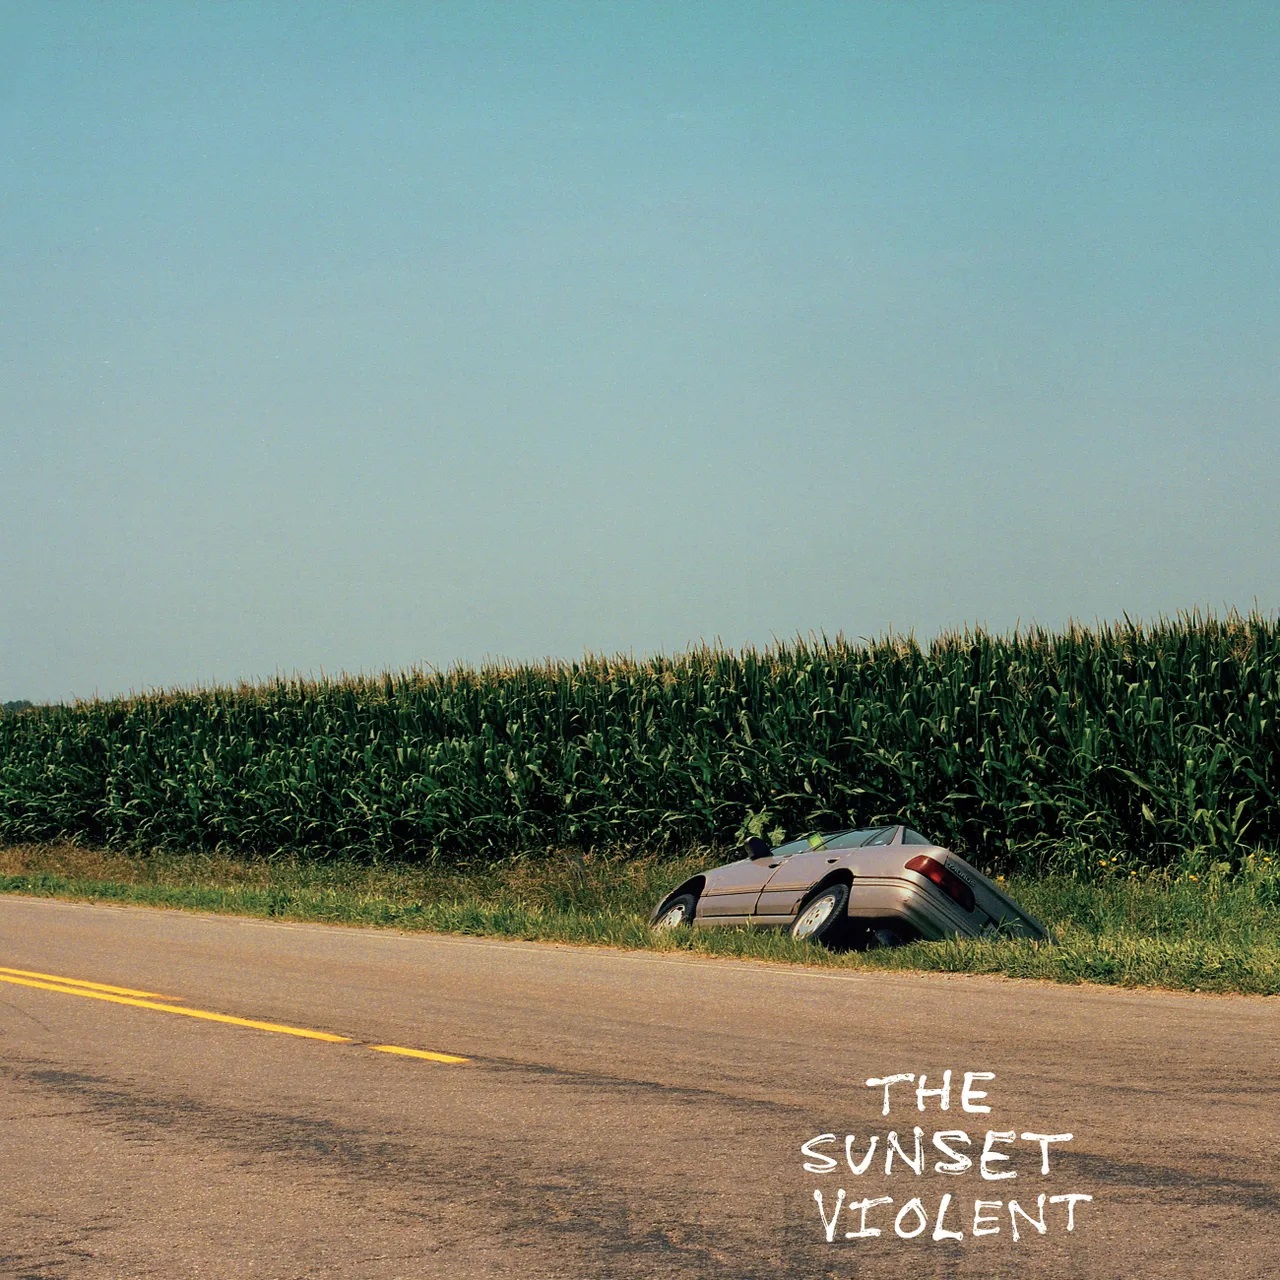 Mount Kimbie Artwork zu "The Sunset Violent": Ein Auto, von der Straße abgekommen, liegt gekippt in einem Maisfeld